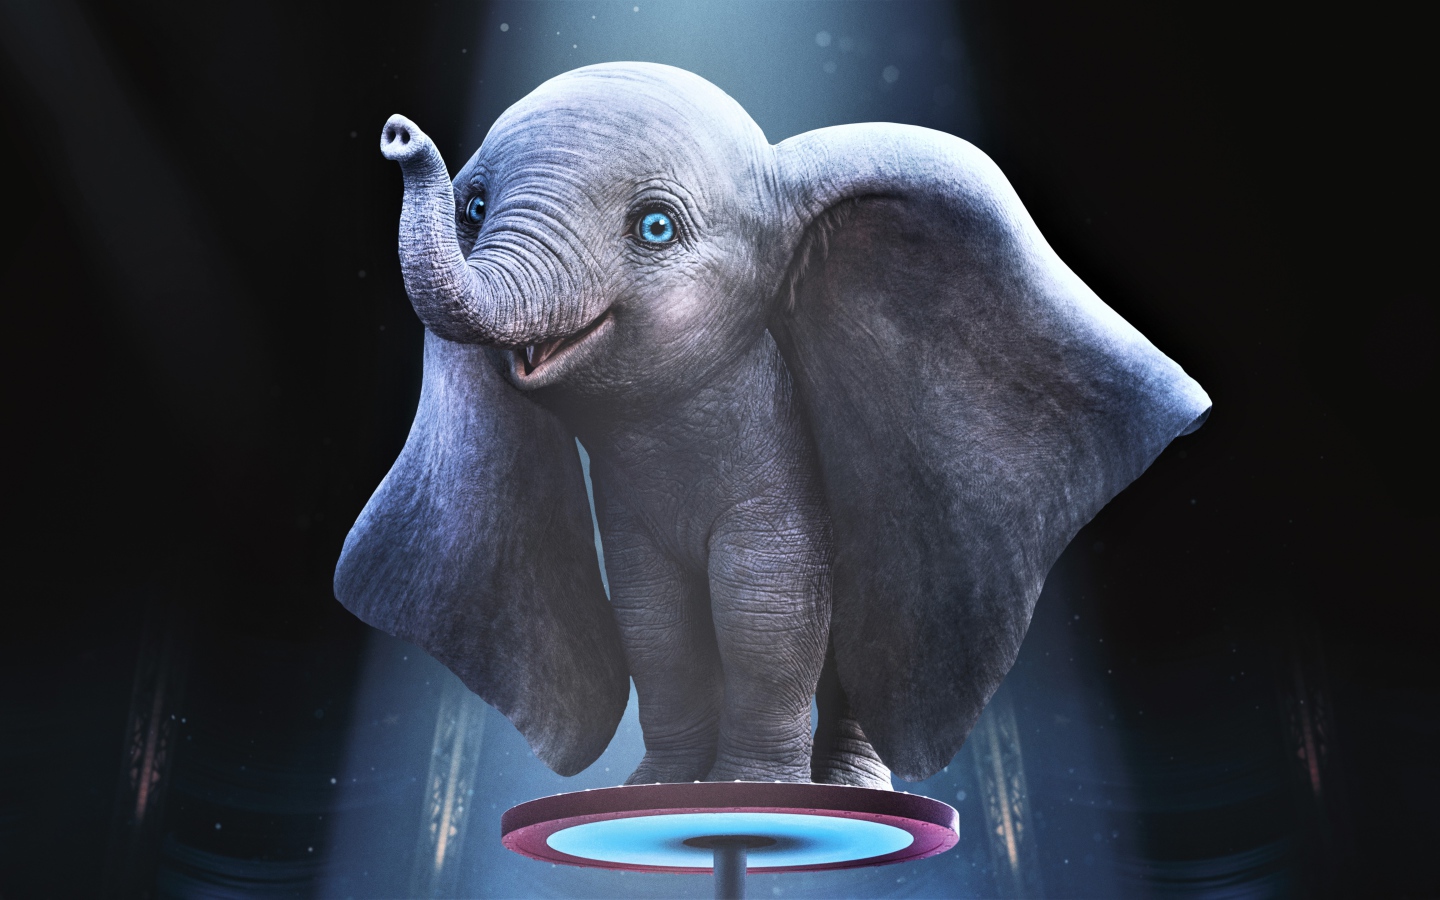 Слоненок из нового фильма Дамбо, 2019